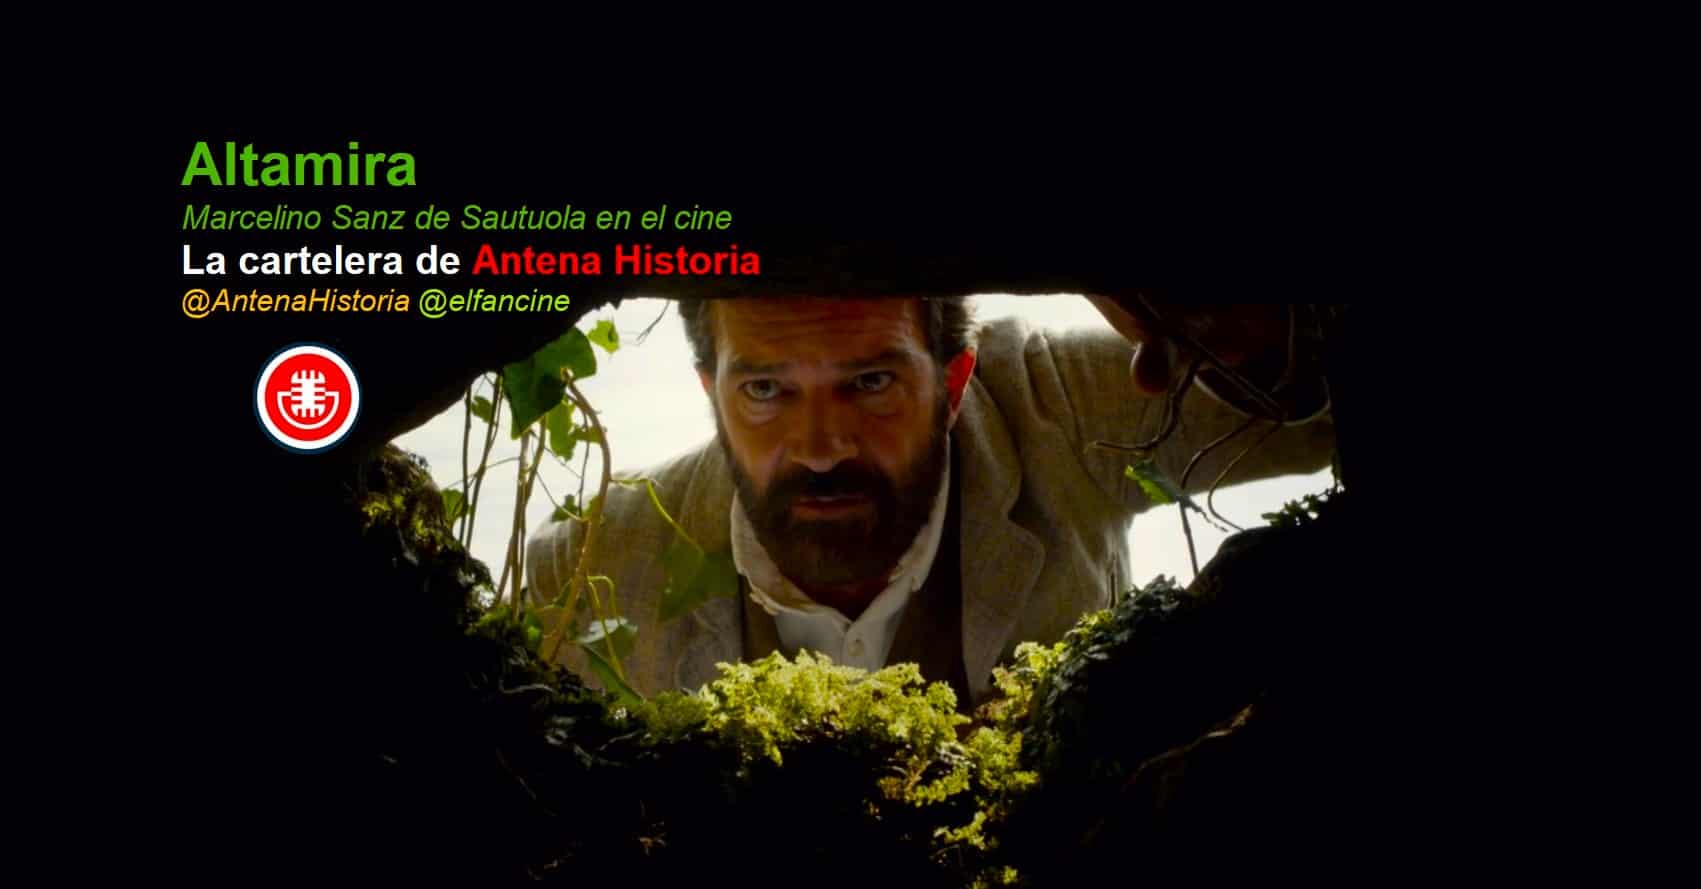 Altamira - Cueva de Altamira - Marcelino Sanz de Sautuola - Cine español - Antonio Banderas - el fancine - Antena Historia - Podcast de cine - Paleolitico - Alvaro Garcia